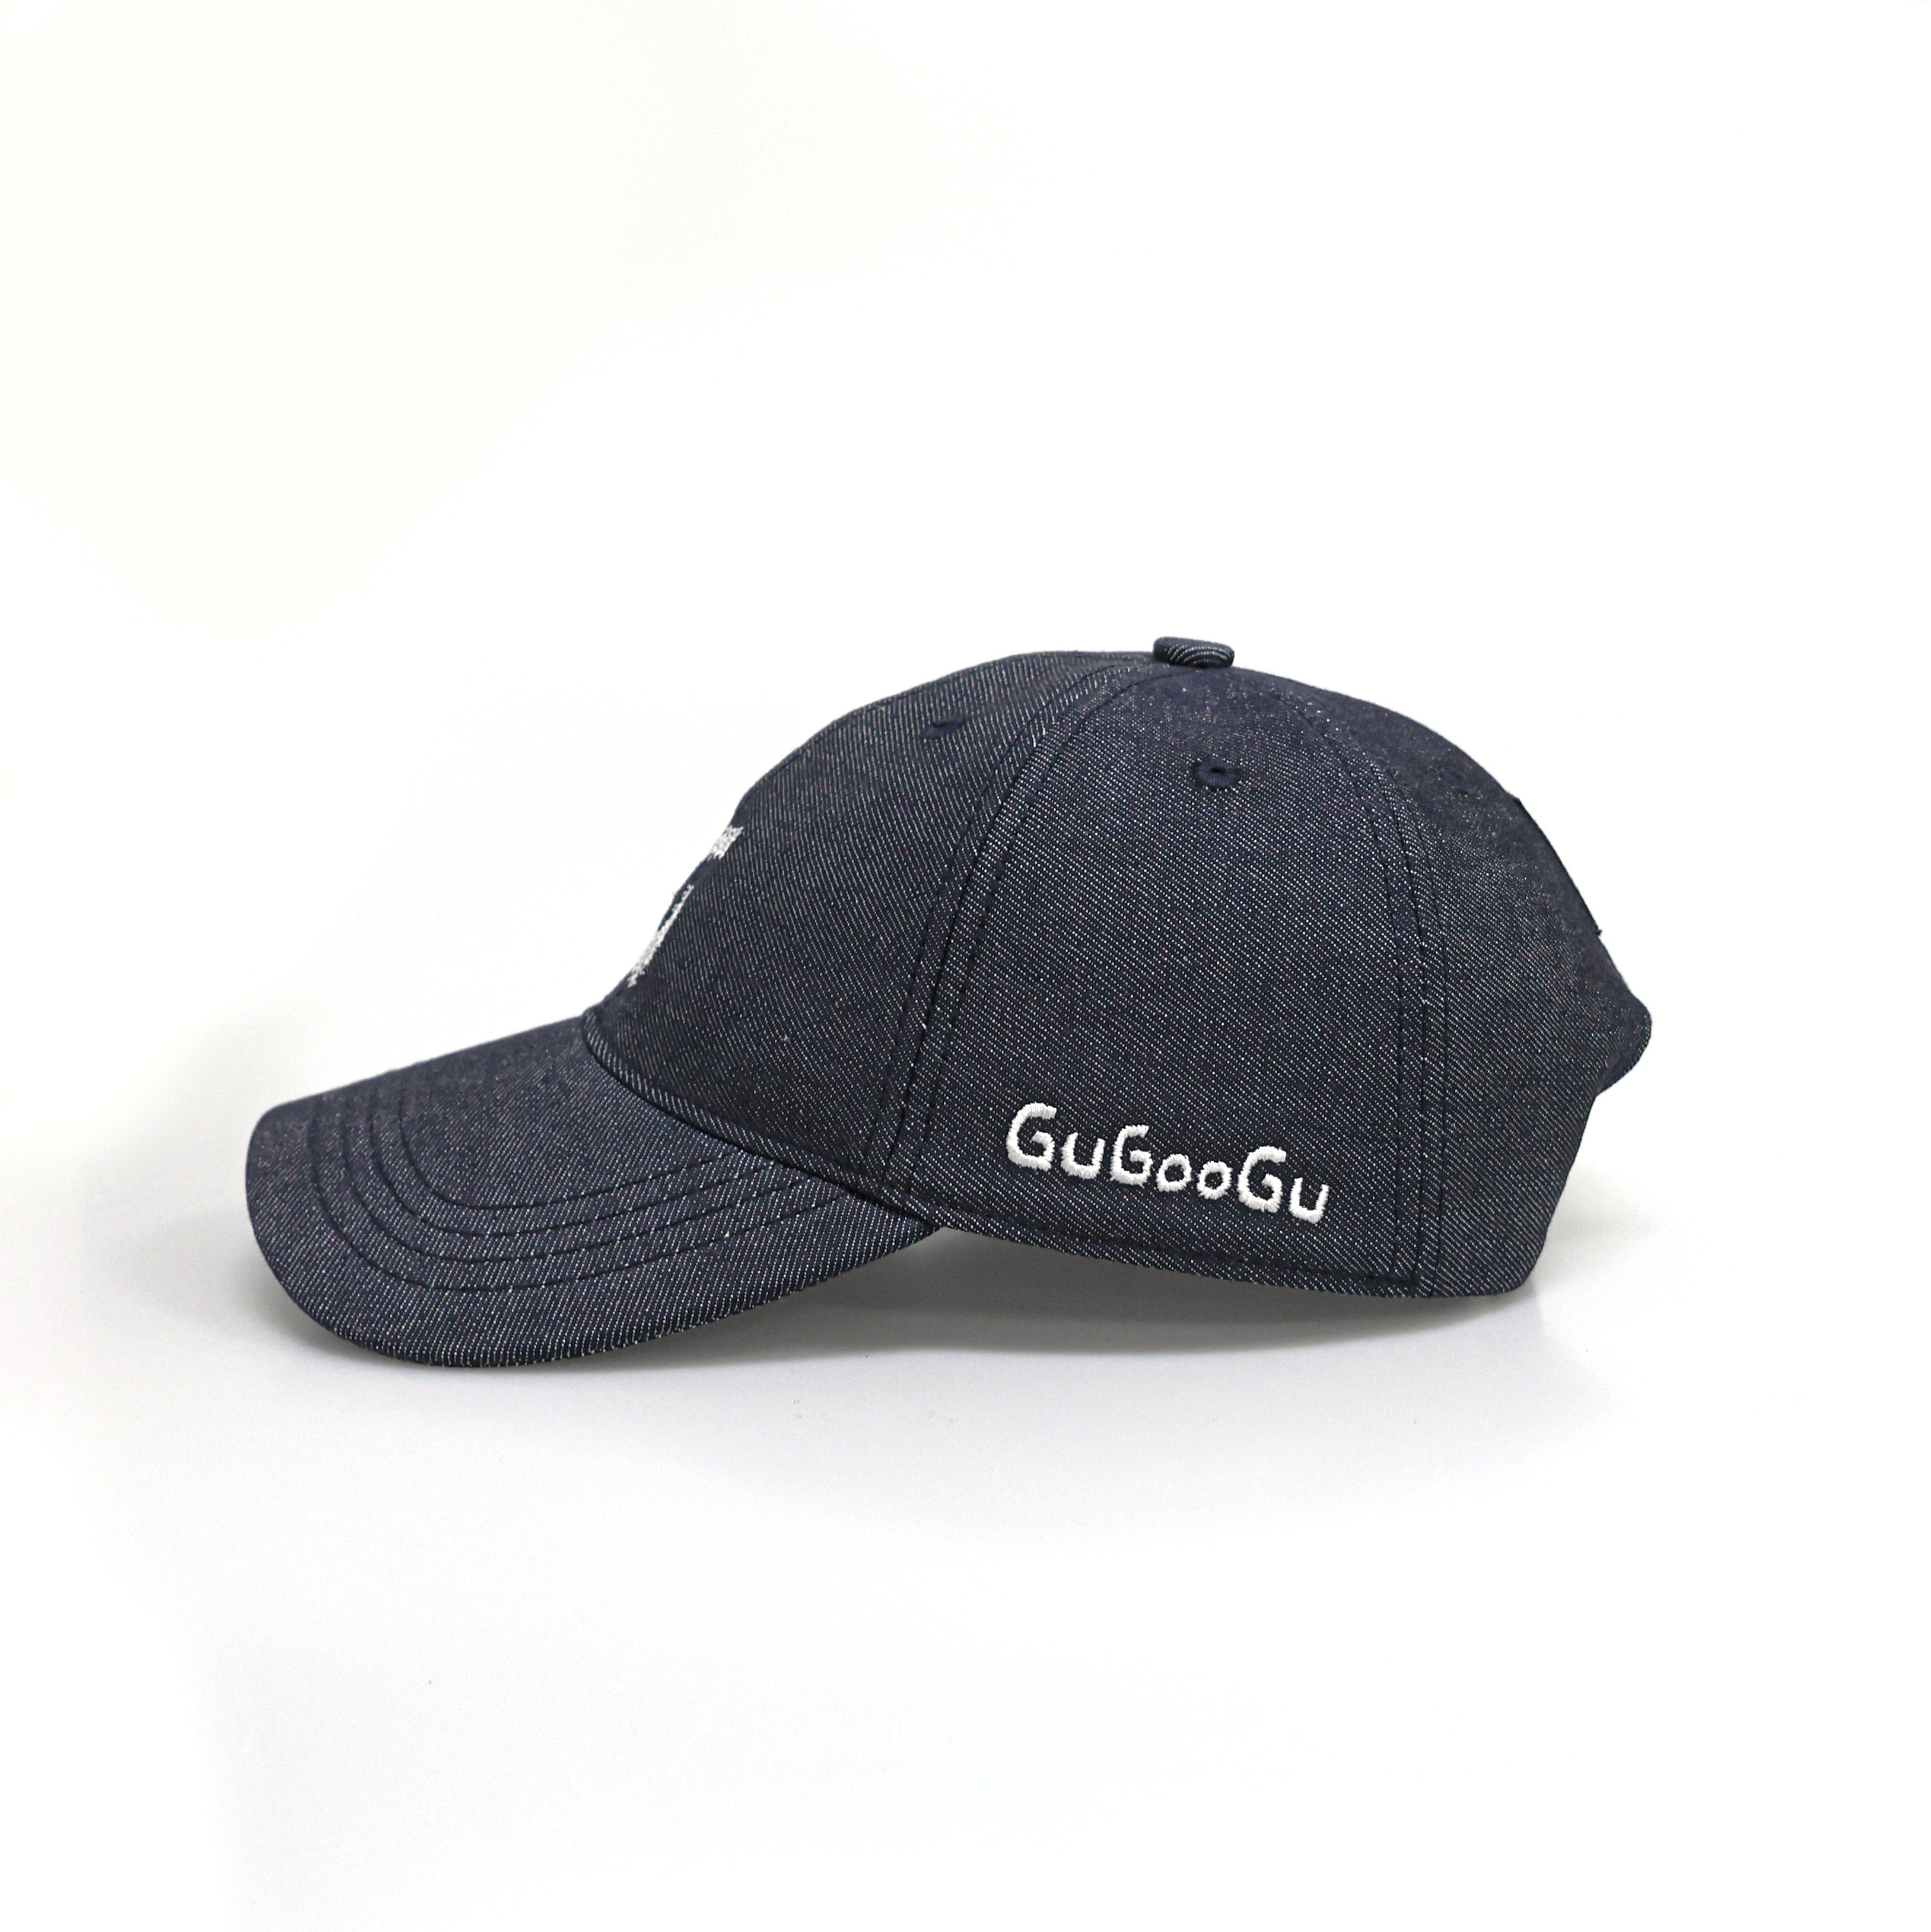 GUGOOGU 精美刺繡棒球帽 簡約百搭鴨舌帽 中性款牛仔帽 低調個性風格